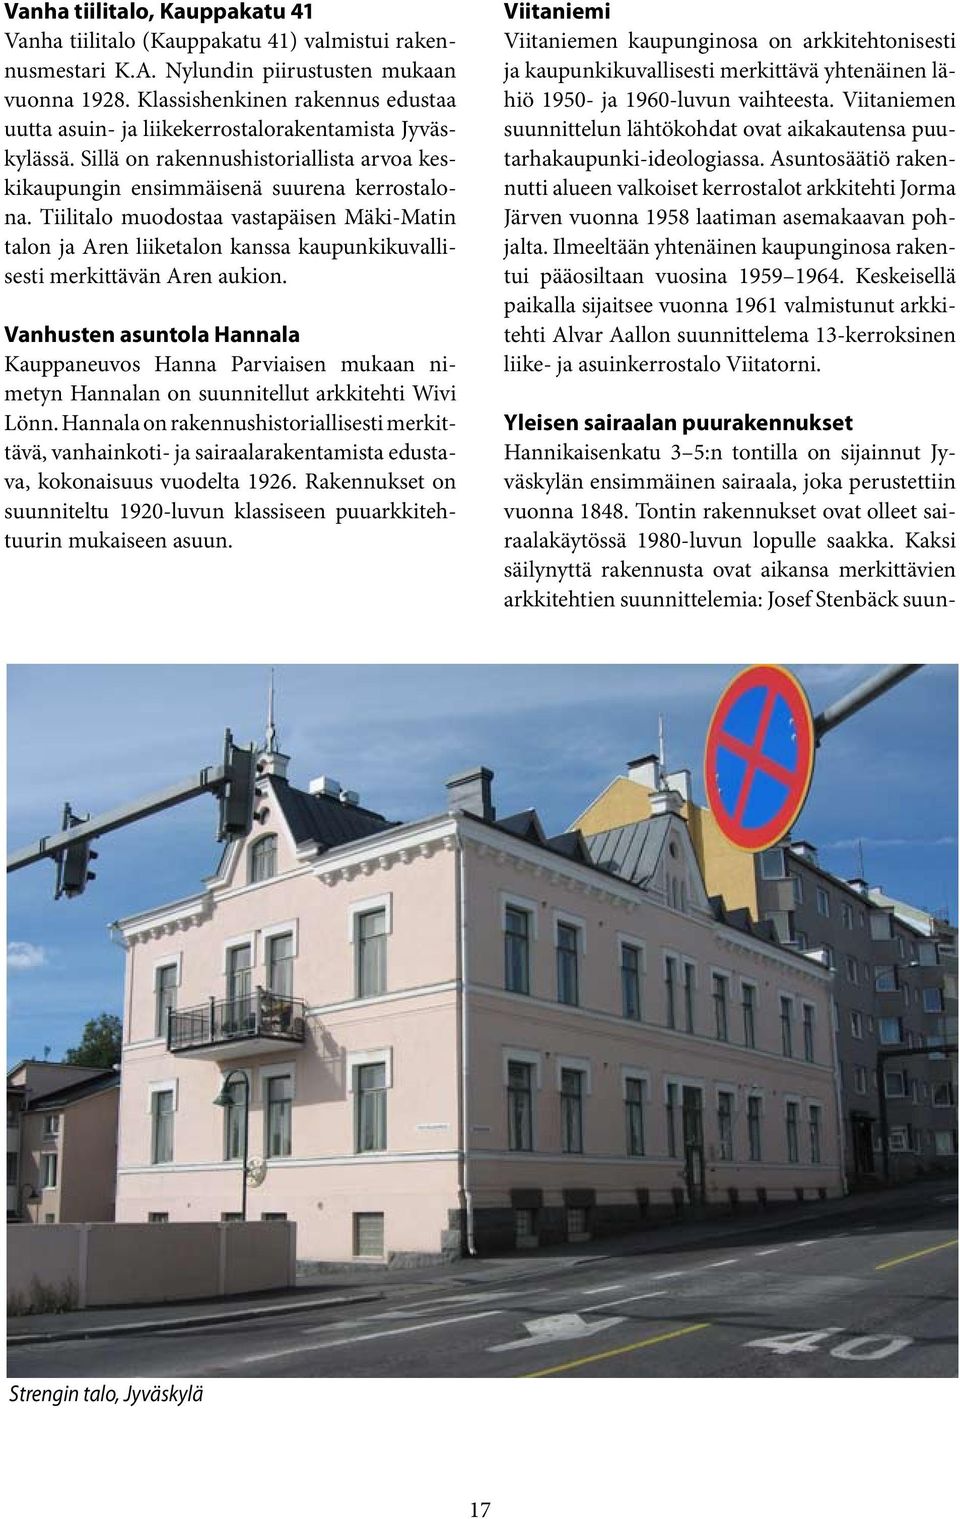 Tiilitalo muodostaa vastapäisen Mäki-Matin talon ja Aren liiketalon kanssa kaupunkikuvallisesti merkittävän Aren aukion.